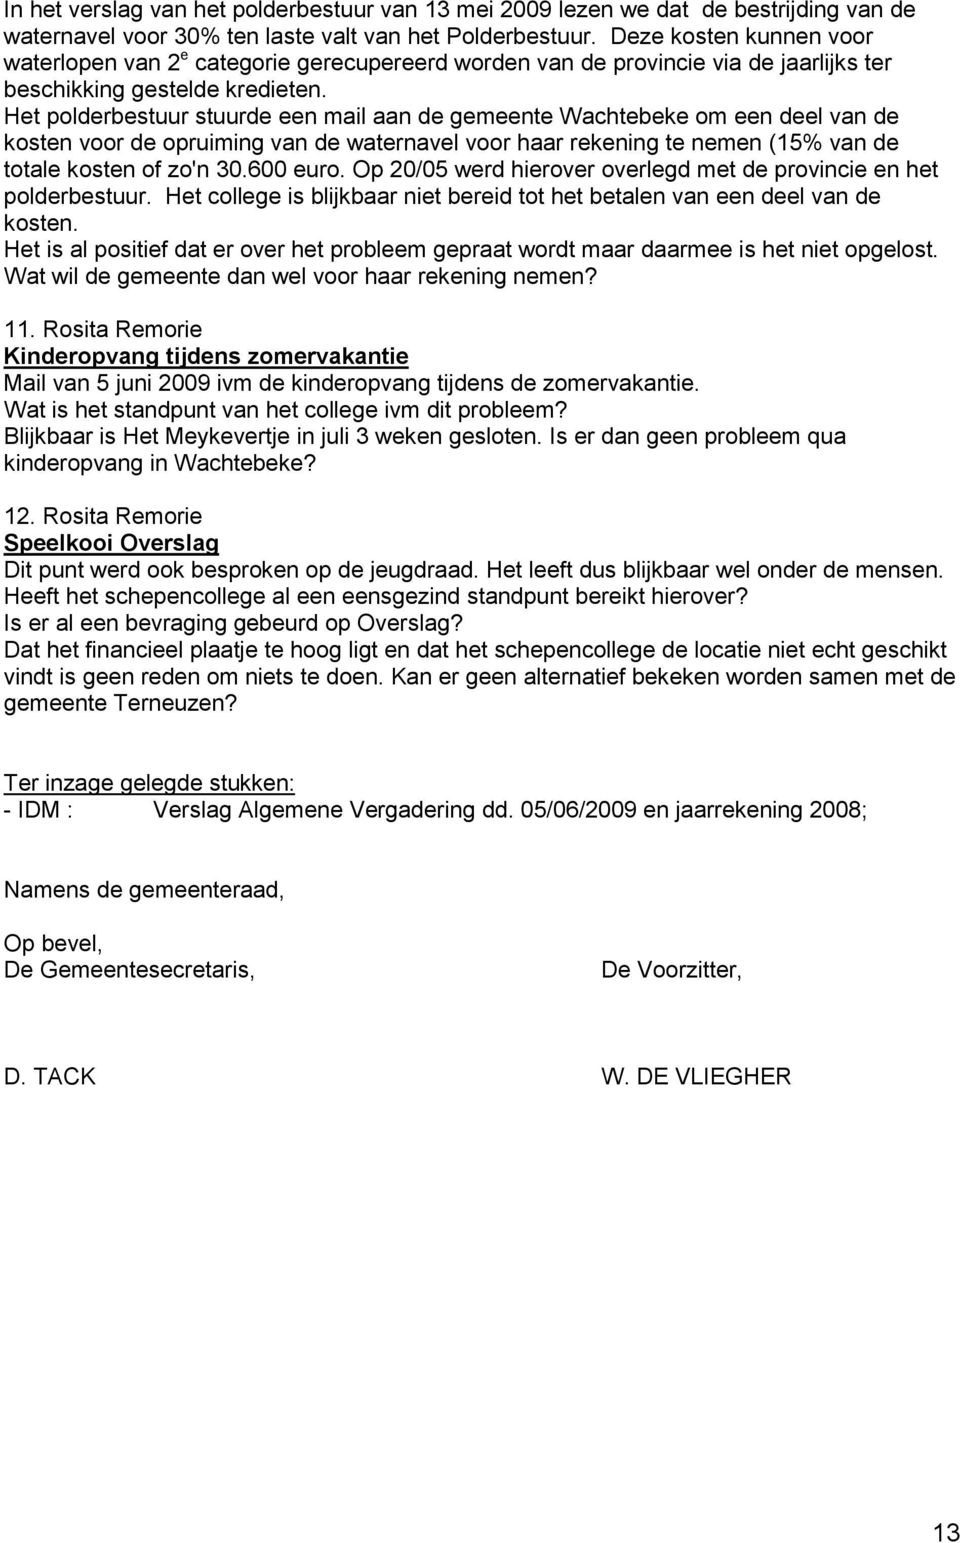 Het polderbestuur stuurde een mail aan de gemeente Wachtebeke om een deel van de kosten voor de opruiming van de waternavel voor haar rekening te nemen (15% van de totale kosten of zo'n 30.600 euro.